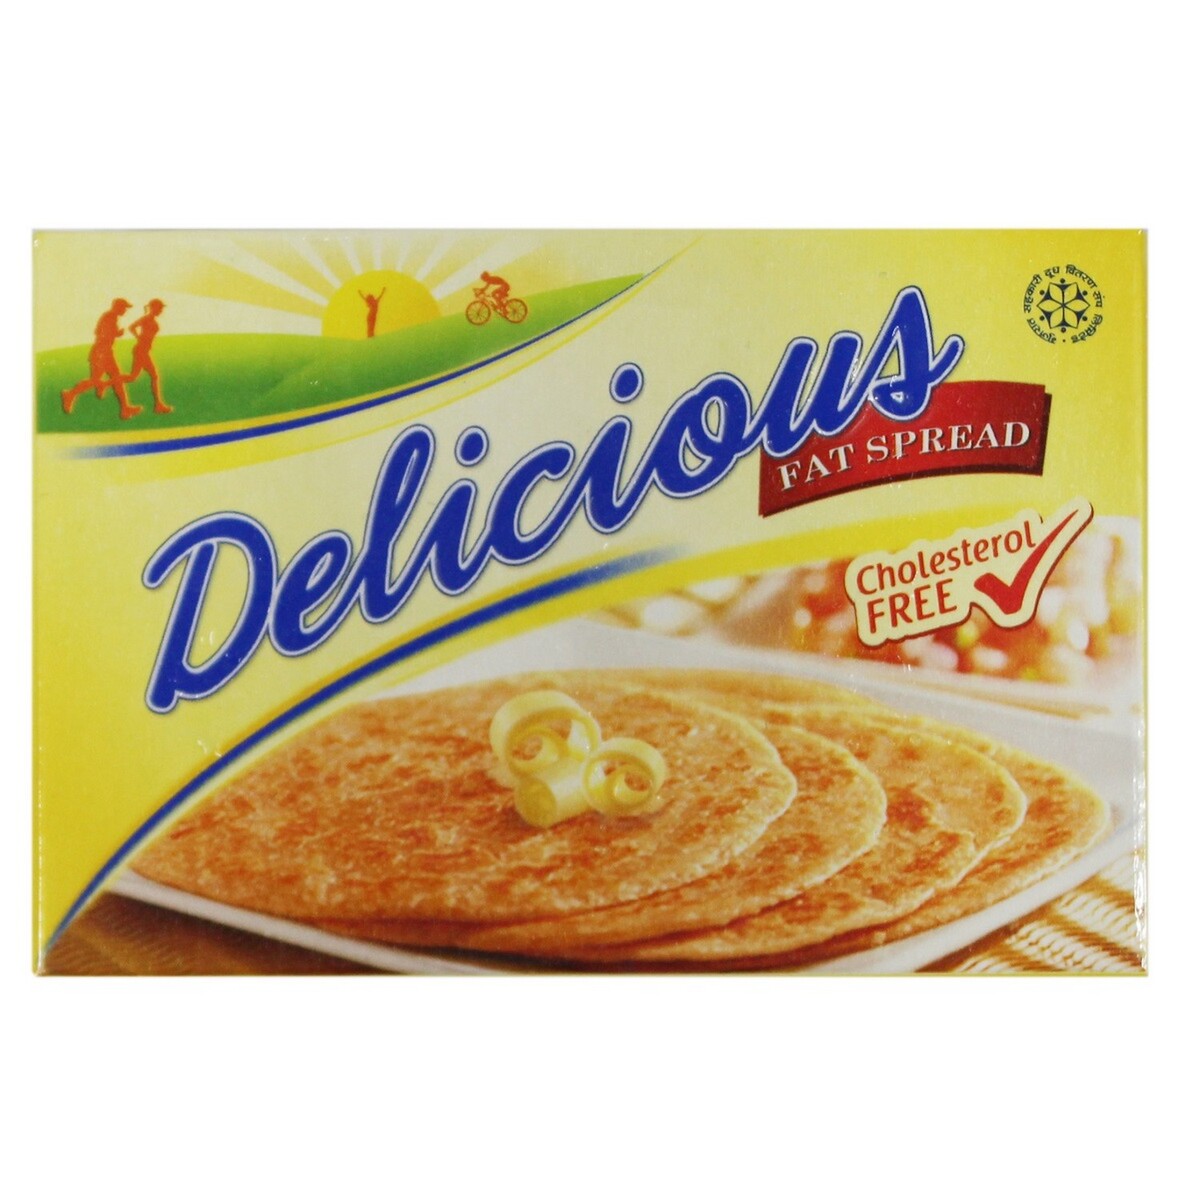 Amul Delicious Margarine 100g